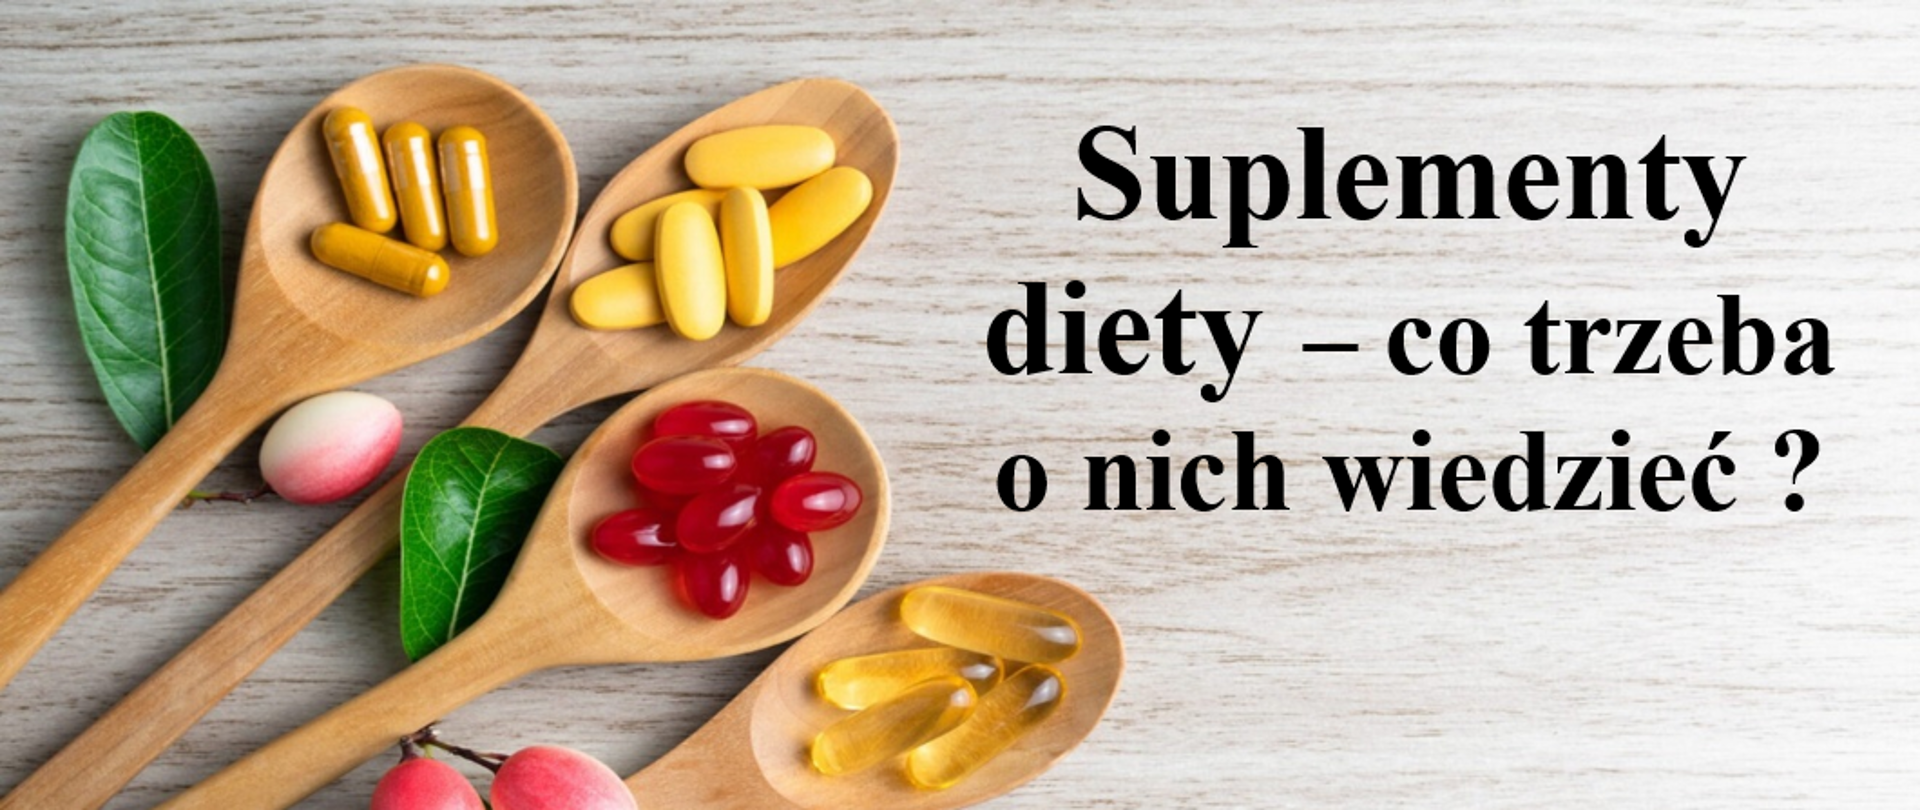 Suplementy diety – co trzeba
o nich wiedzieć ?
